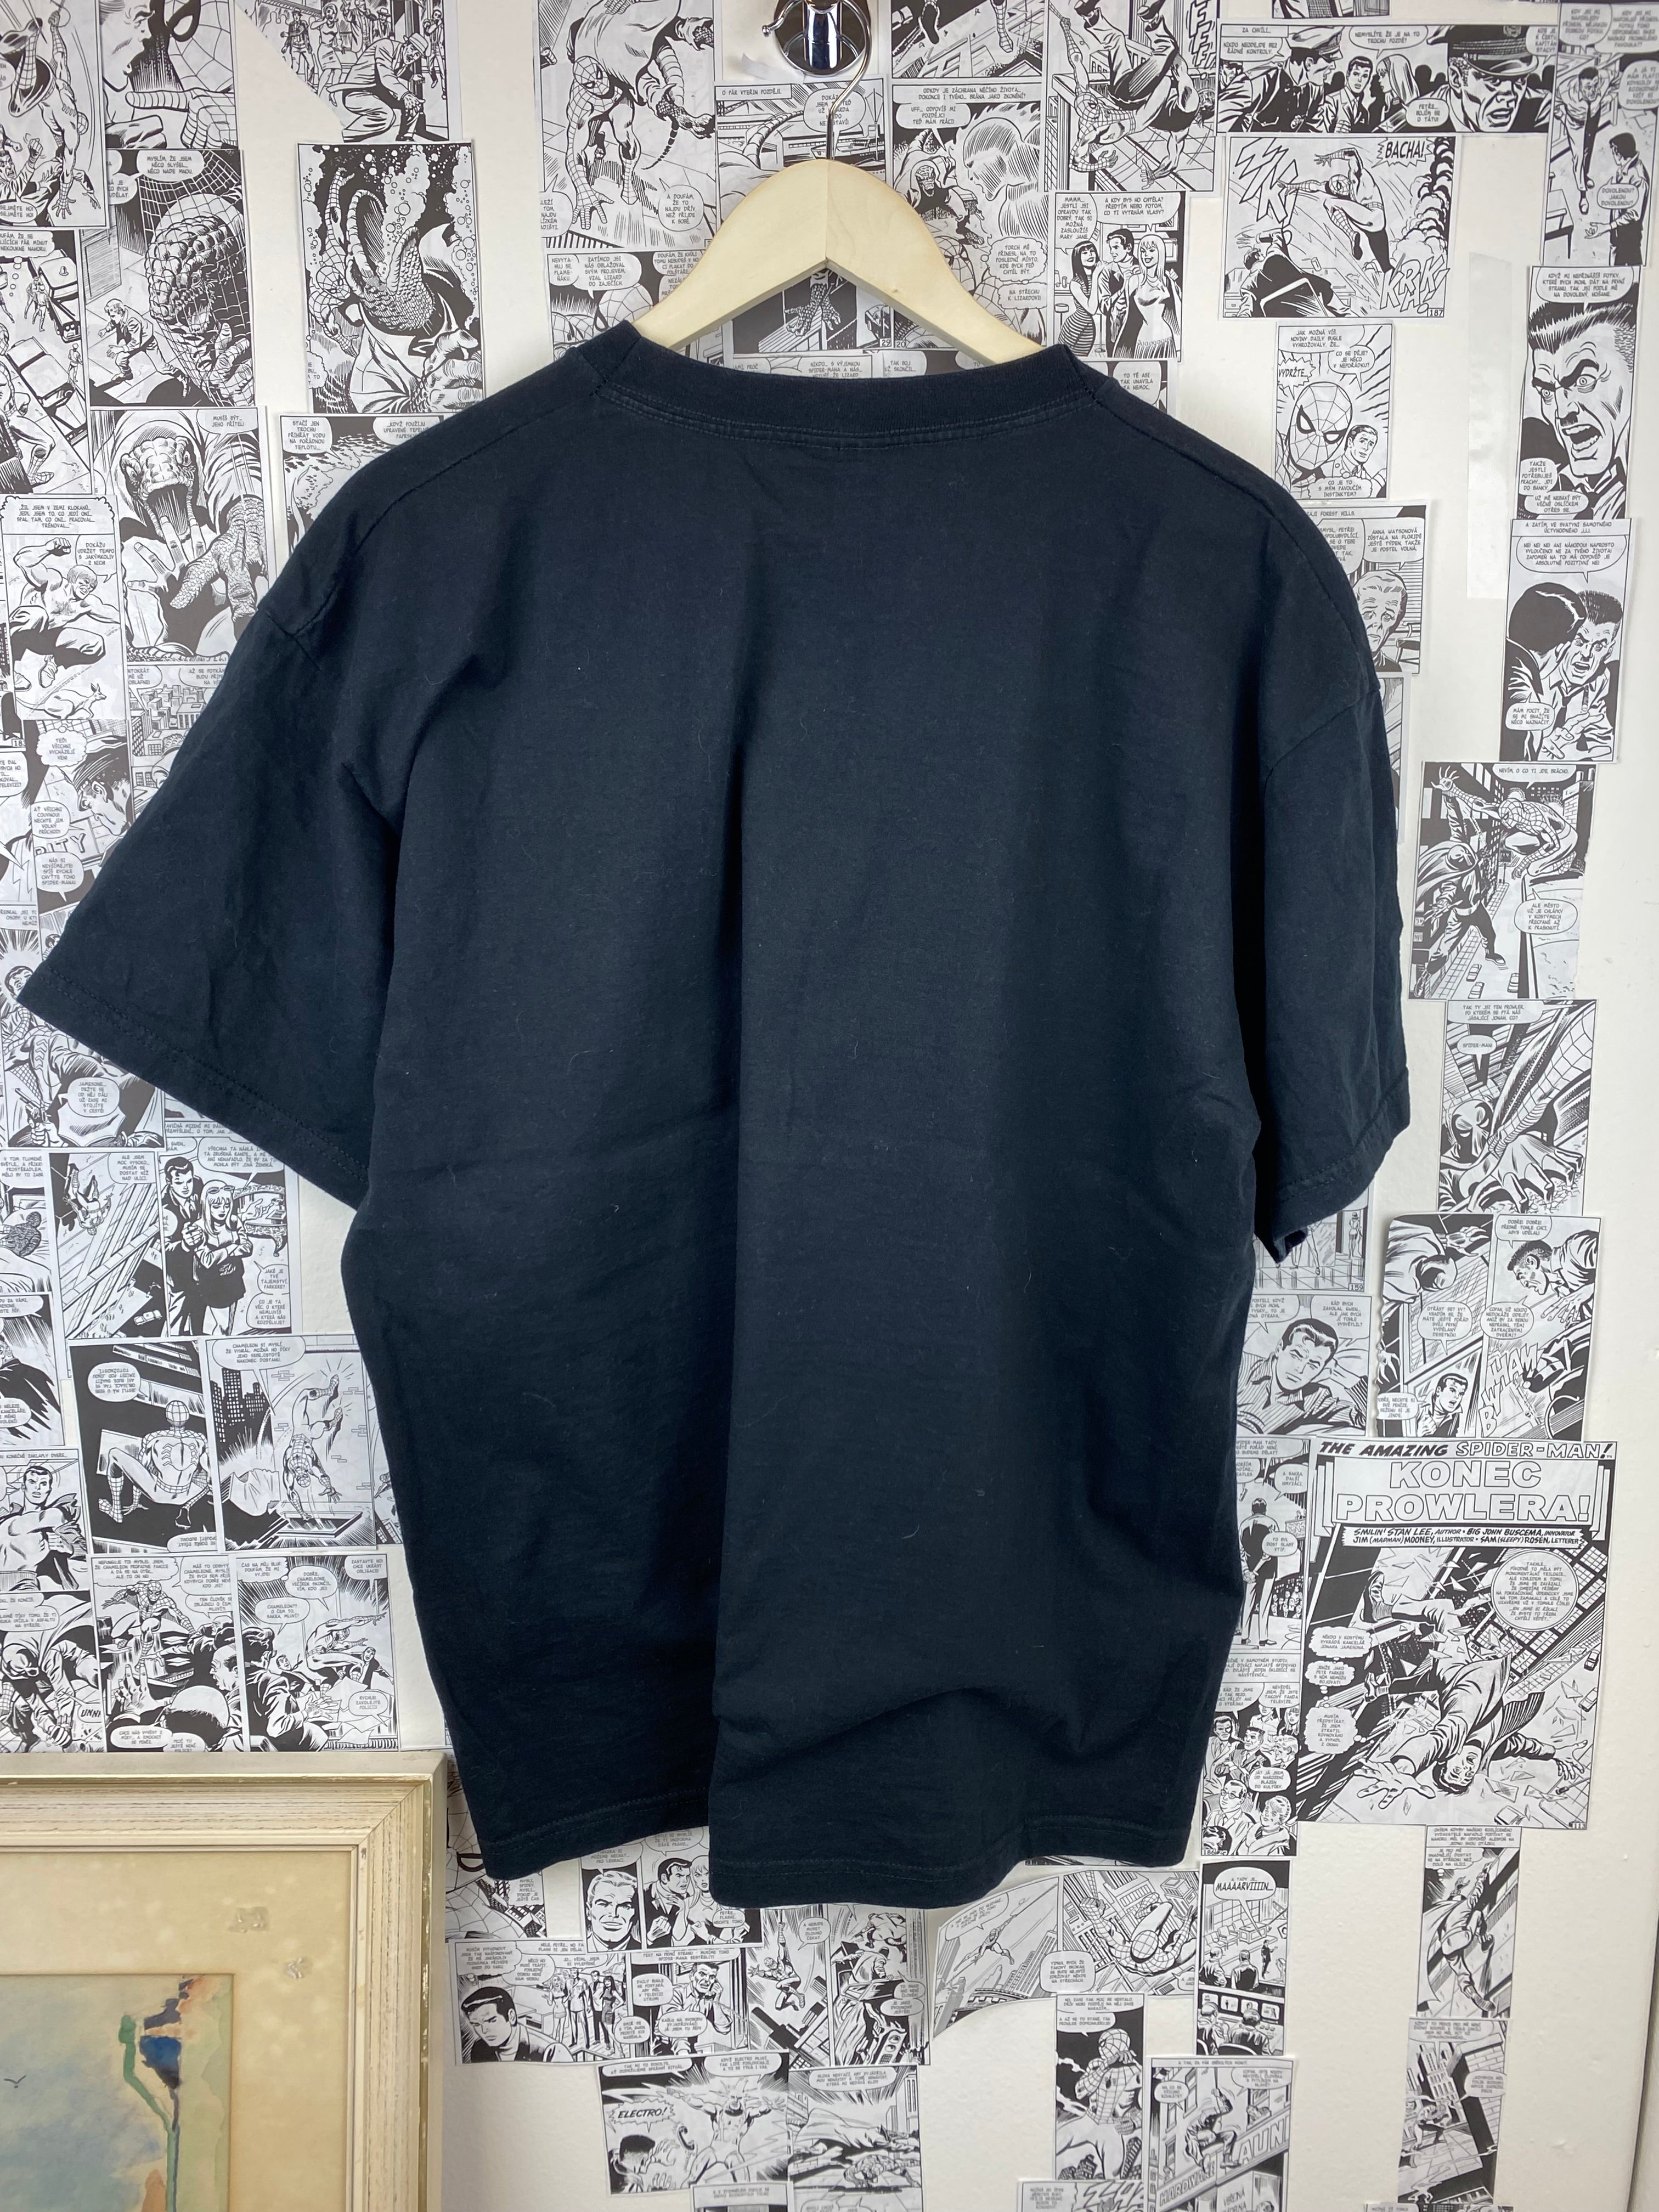 Vintage HIM “Lovemetal” t-shirt - size XL